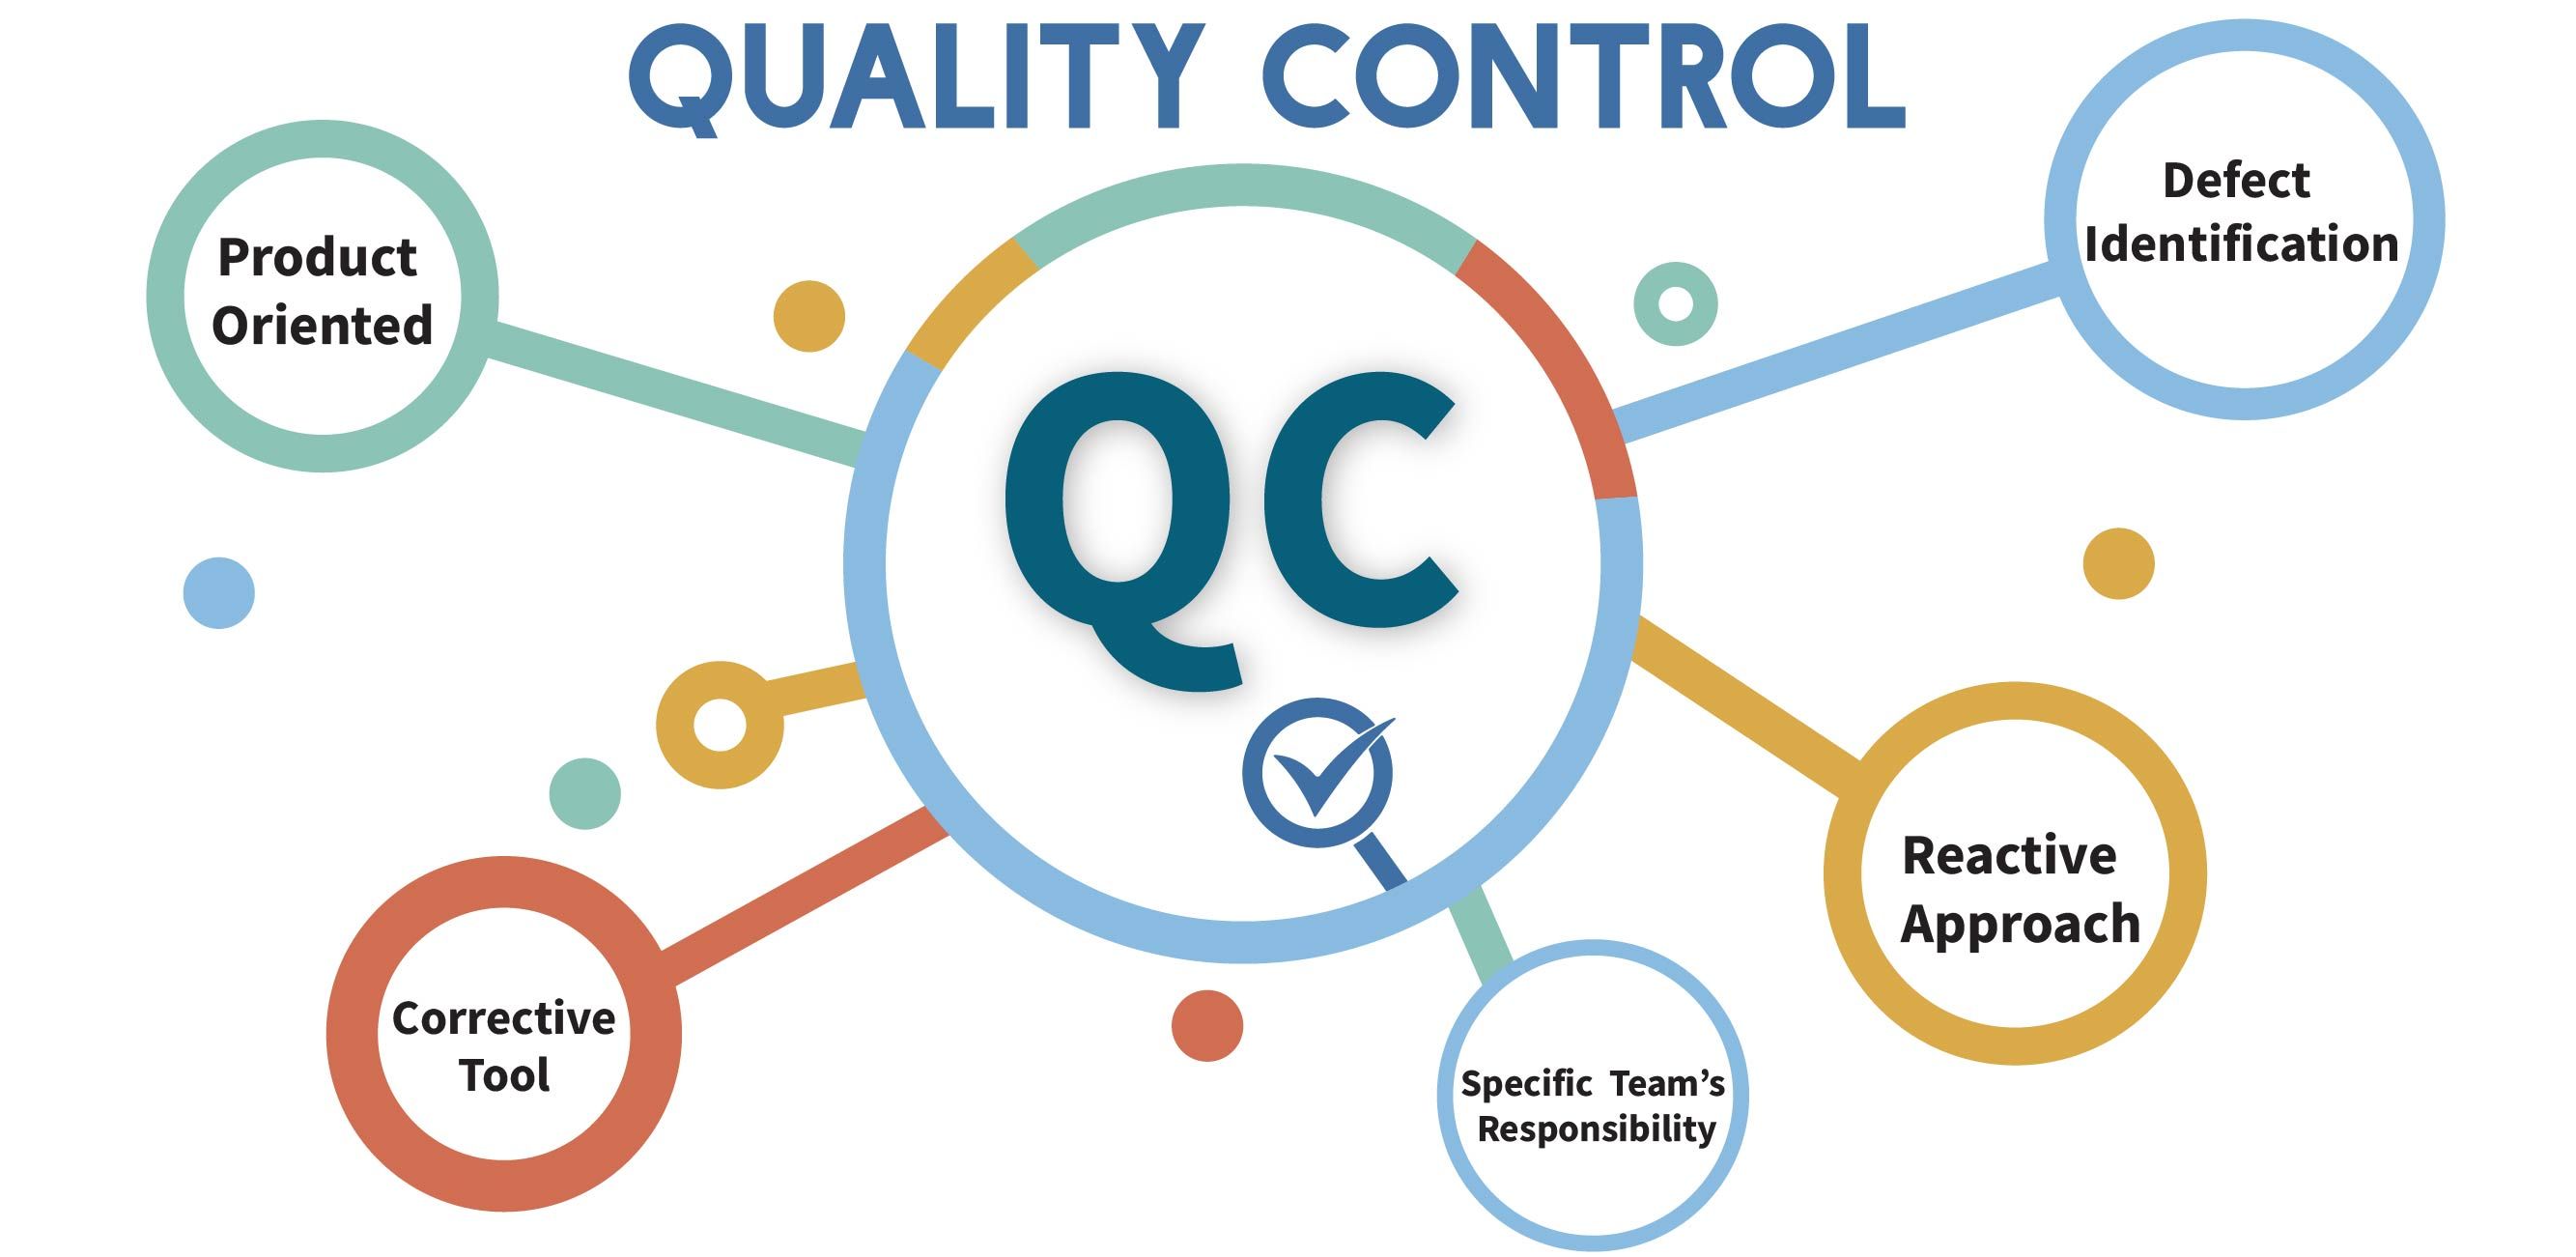 Quality production. QC контроль качества. Product quality Control. Quality Control фильтр. Quality Control procedure.